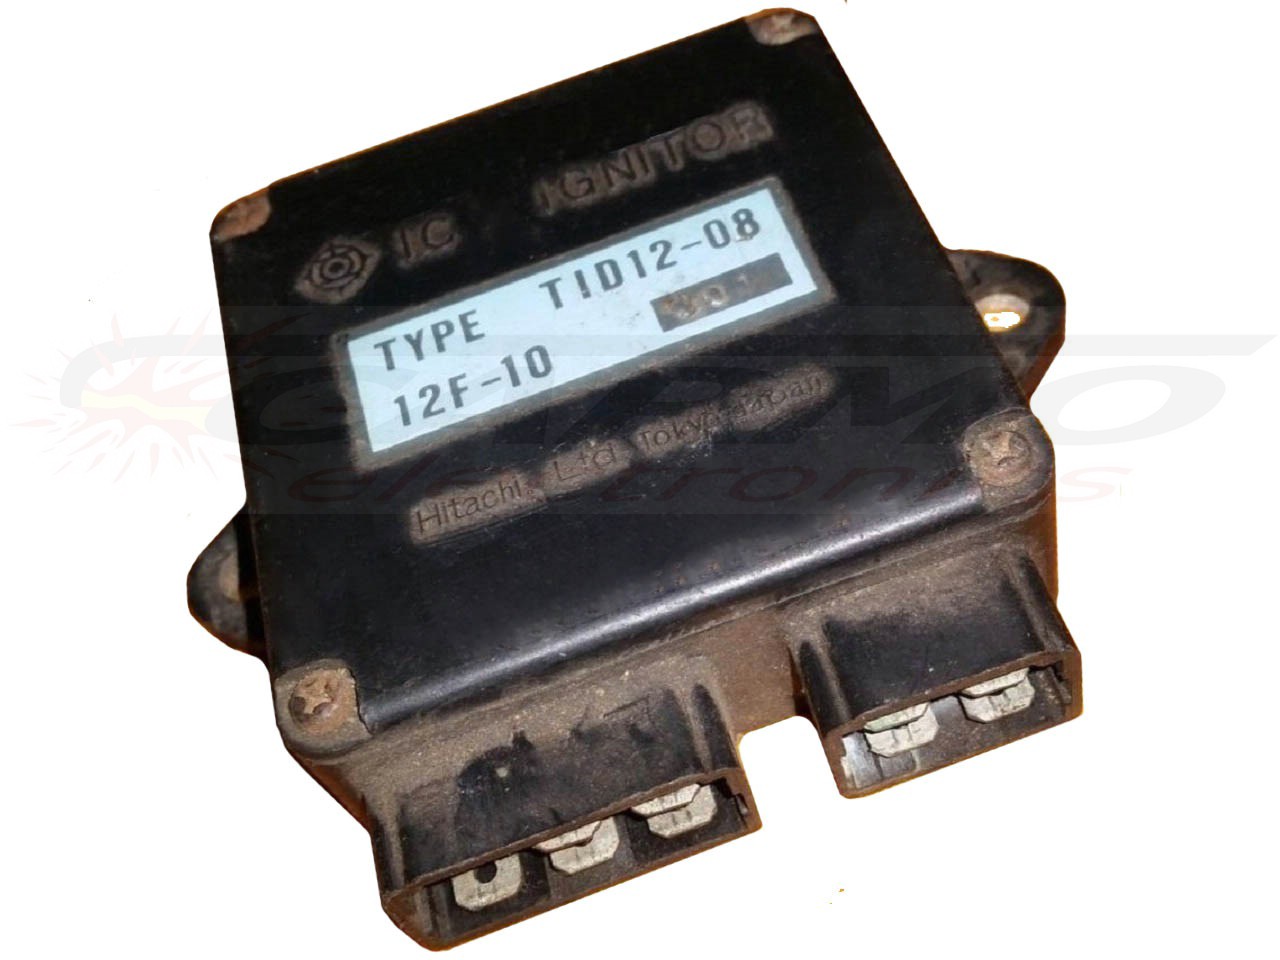 XS400 DOHC CDI unidad de control (TID12-08, 12F-10)